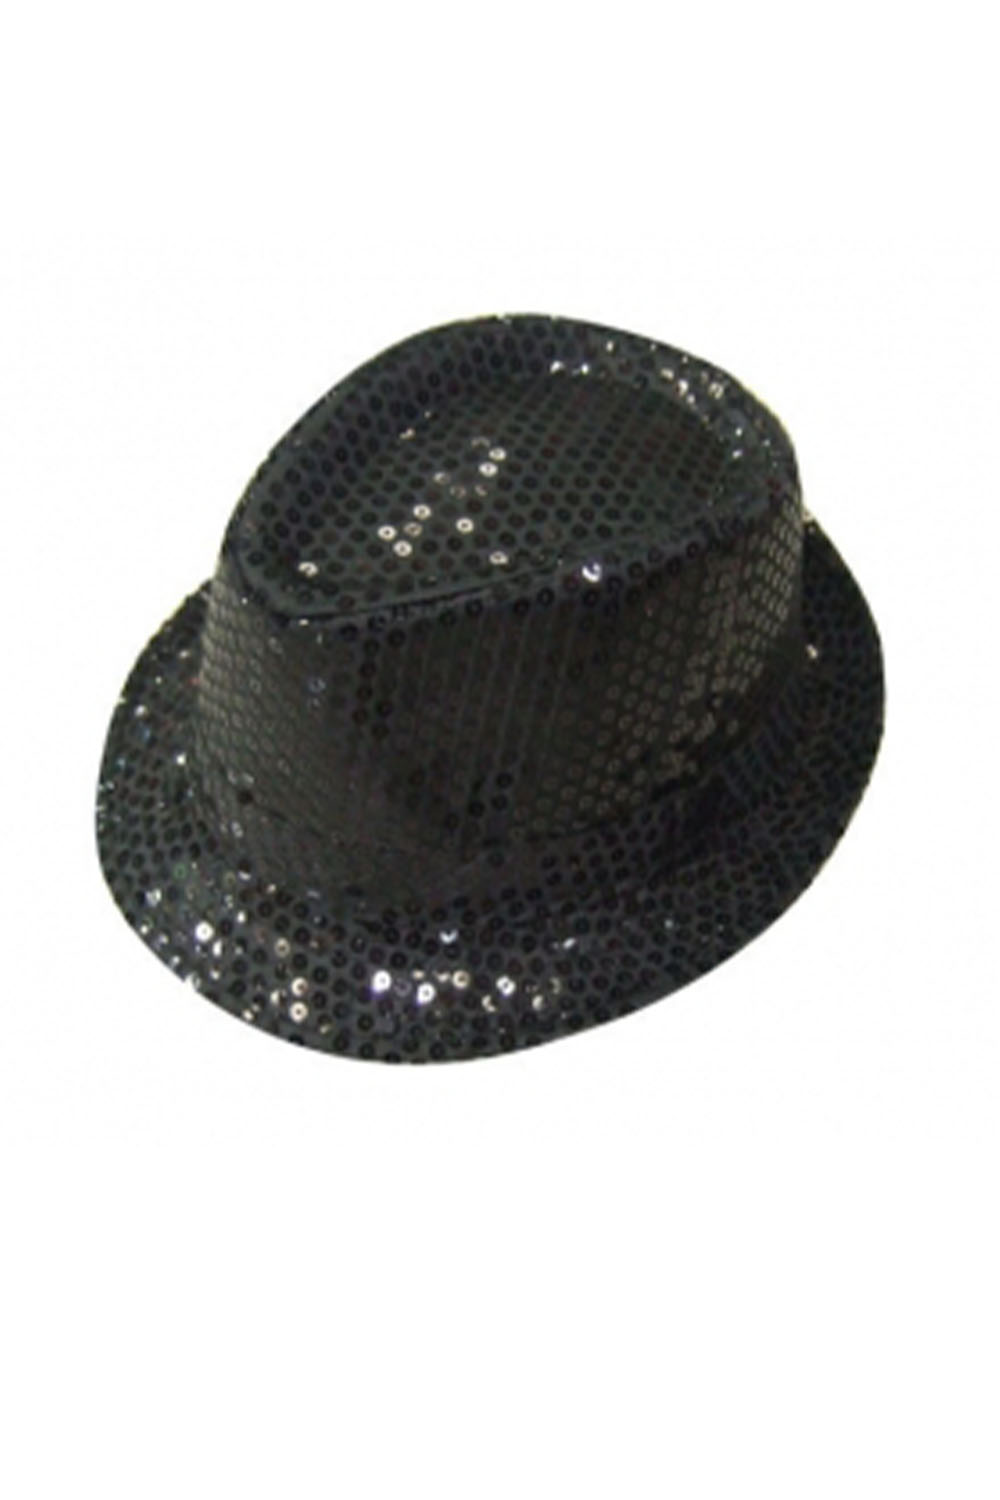 Wickedfun Black Sequin Gangster Hat